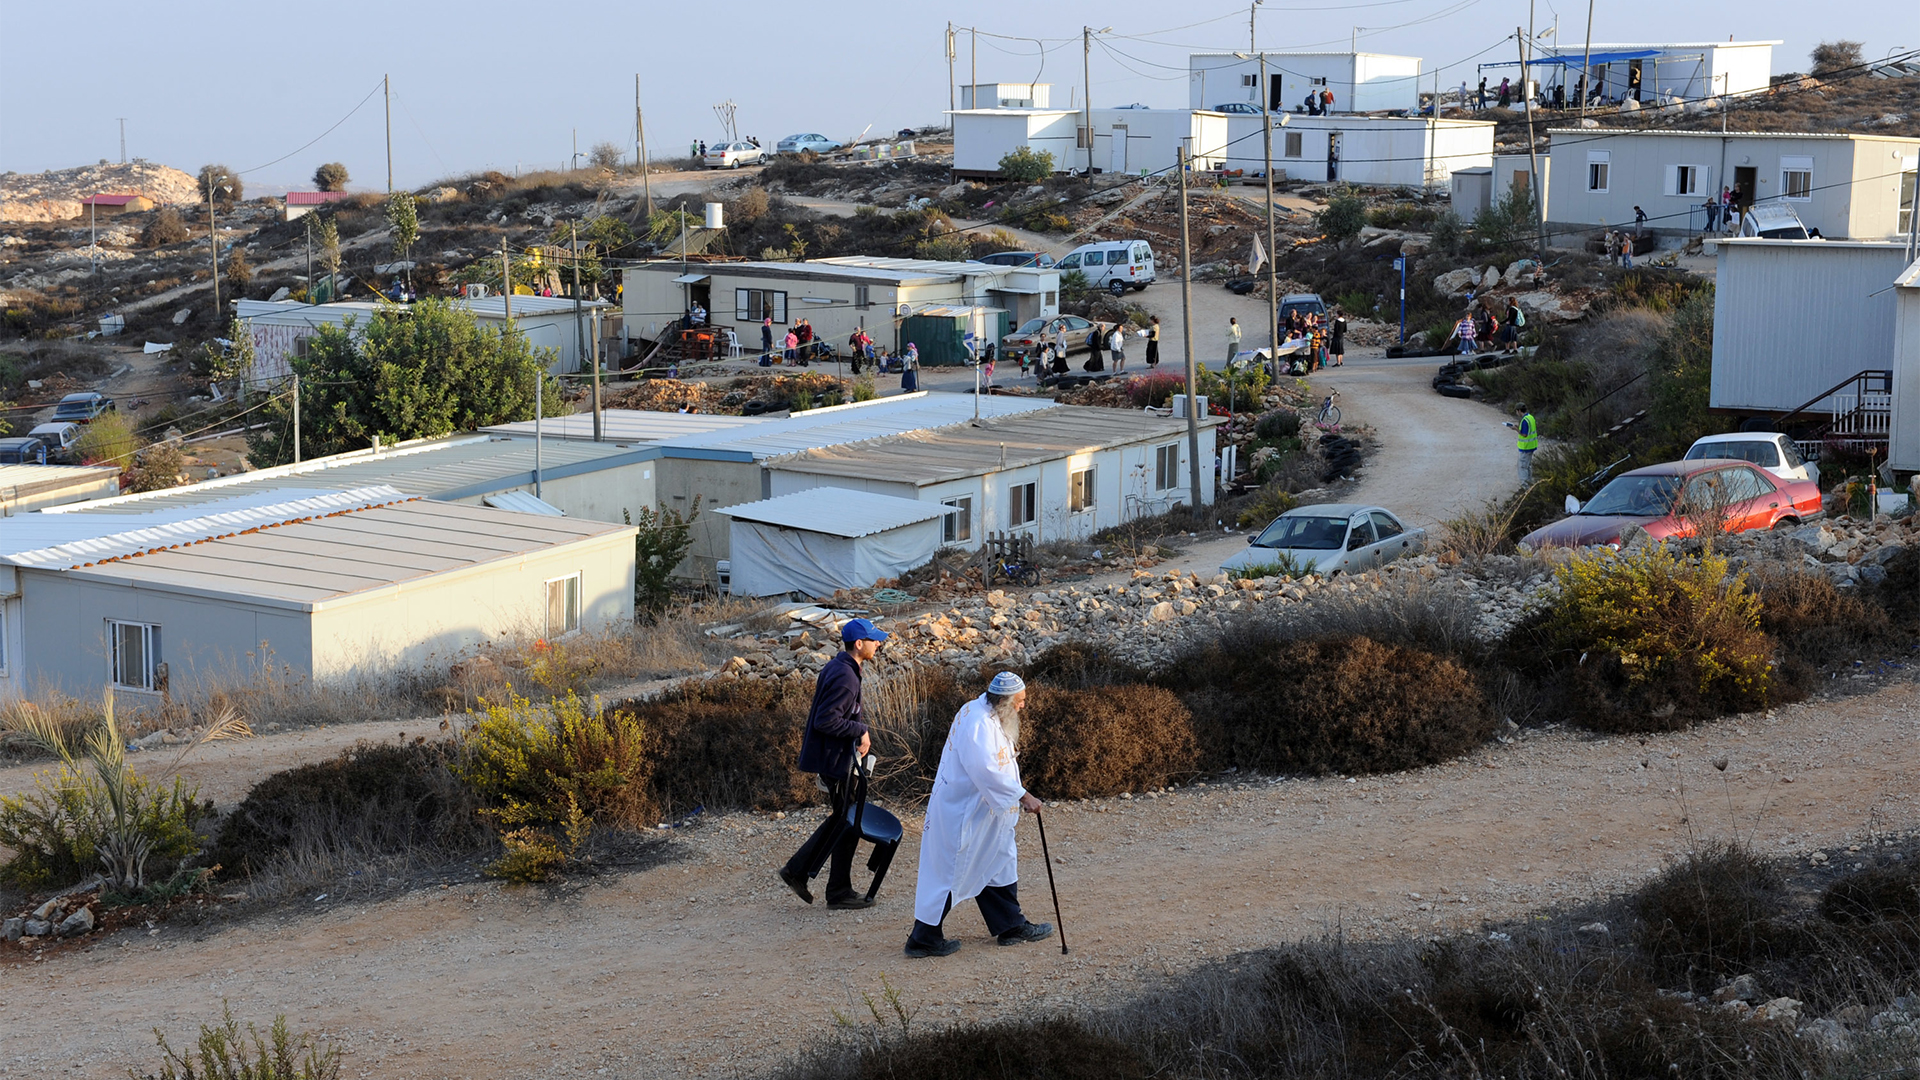 Die israelische Siedlung Givat im Westjordanland | Bildquelle: picture alliance / Newscom